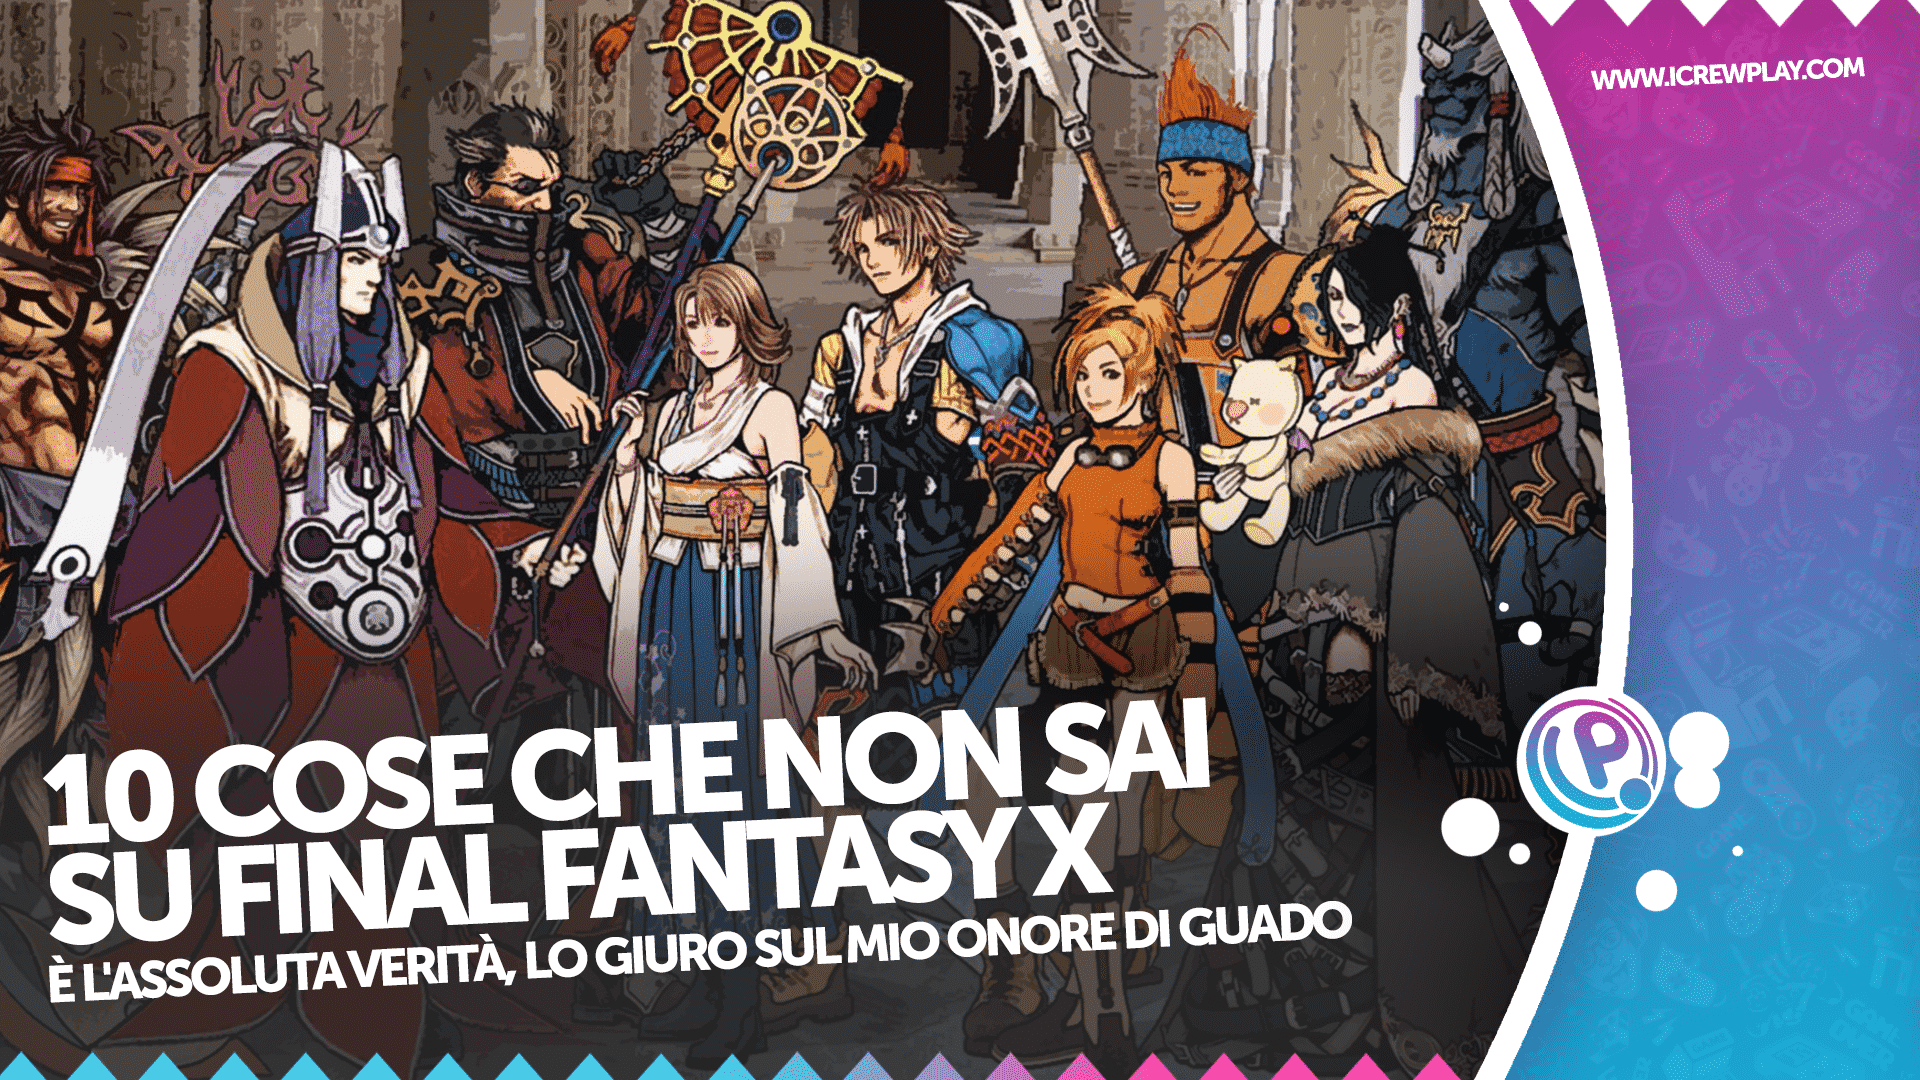 10 cose che non sai su Final Fantasy X 4